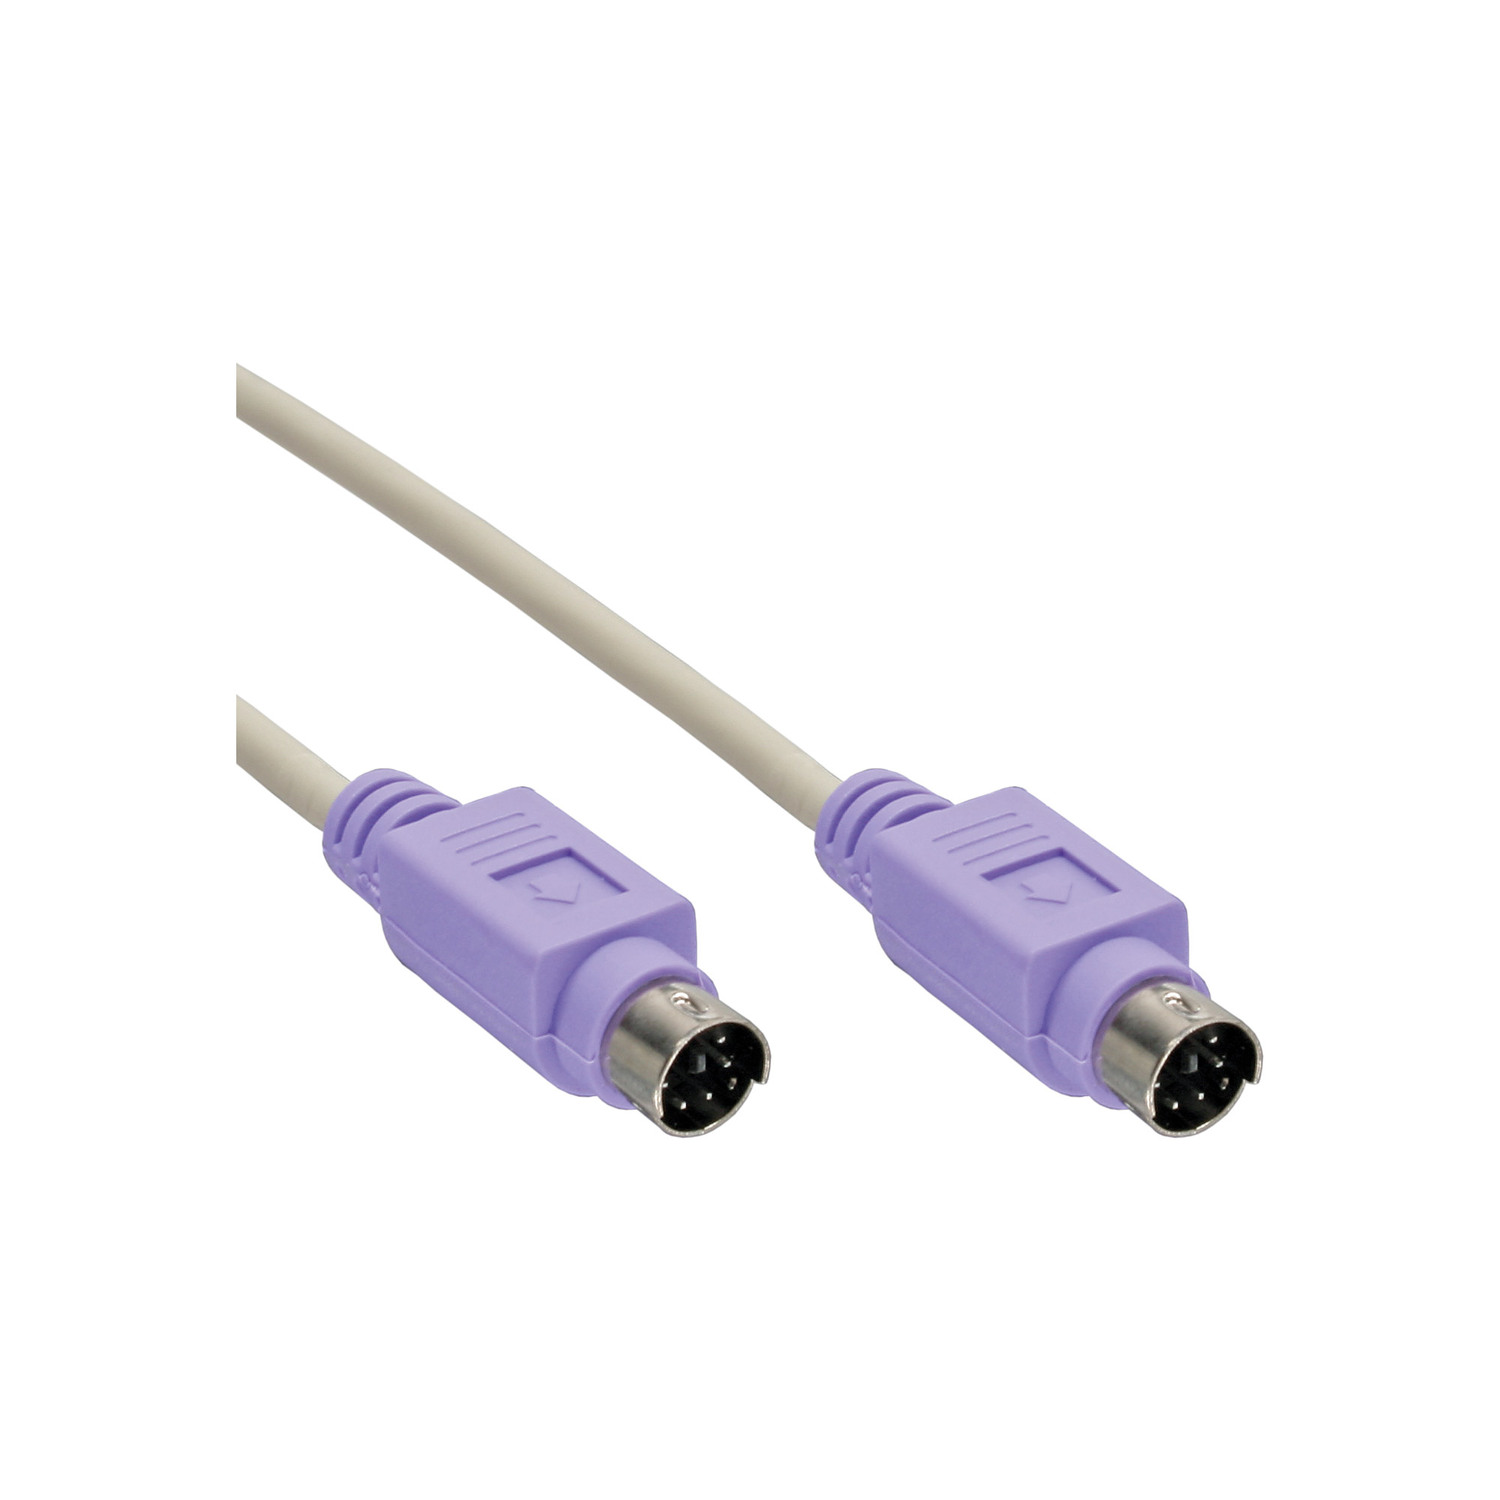 INLINE InLine® PS/2 Kabel, Stecker 2 PS/2, Stecker, Farbe m PC 2m Kabel, Violett, 99, 